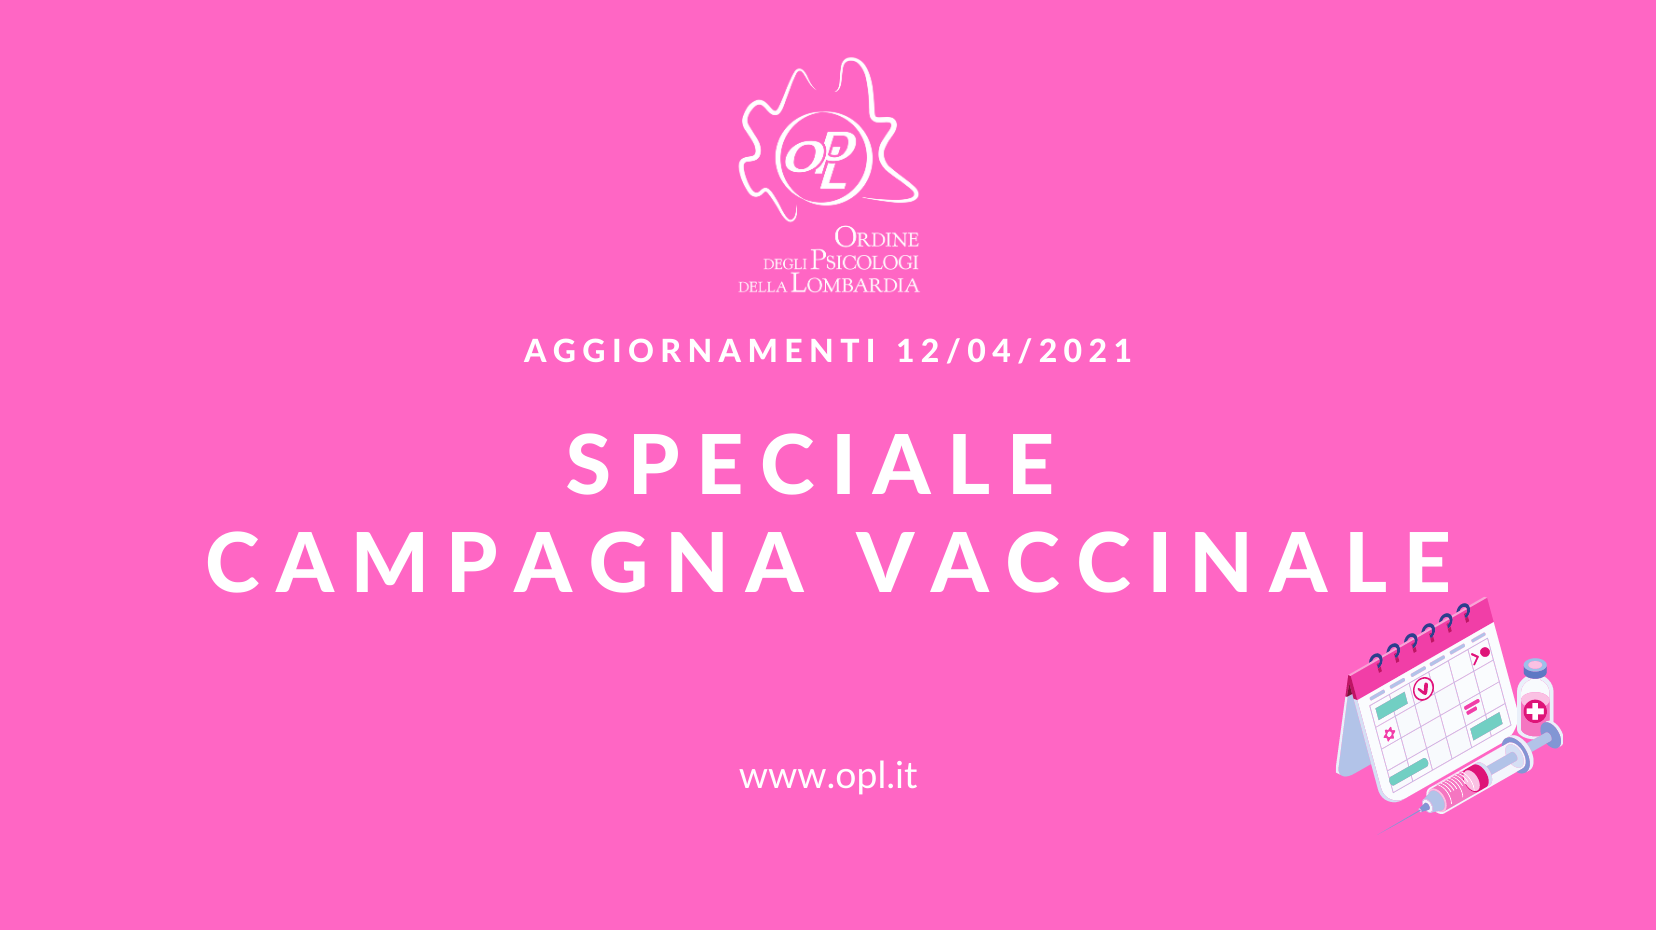 Aggiornamenti del 12/04/2021 - Speciale campagna vaccinale